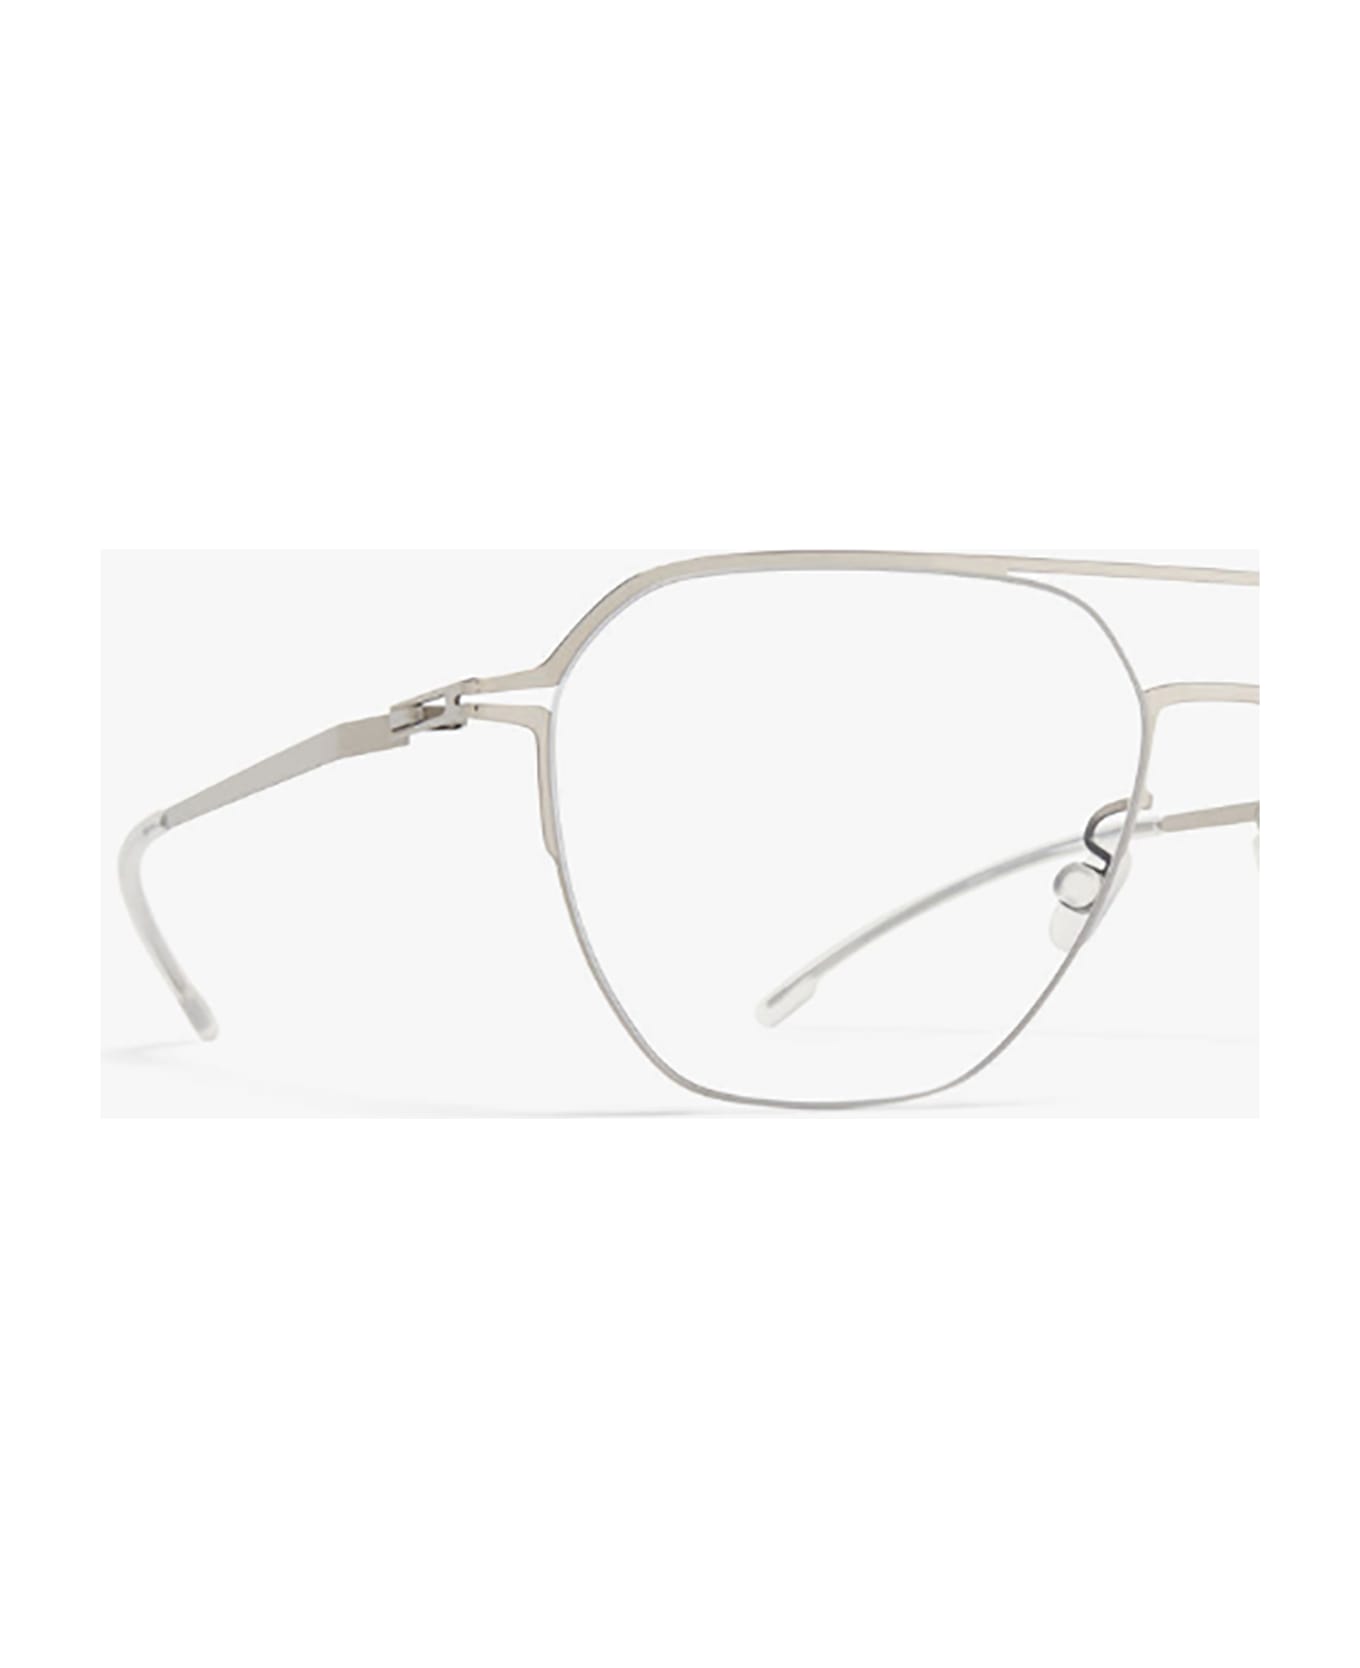 Mykita IMBA Eyewear - Shiny Silver Clear アイウェア